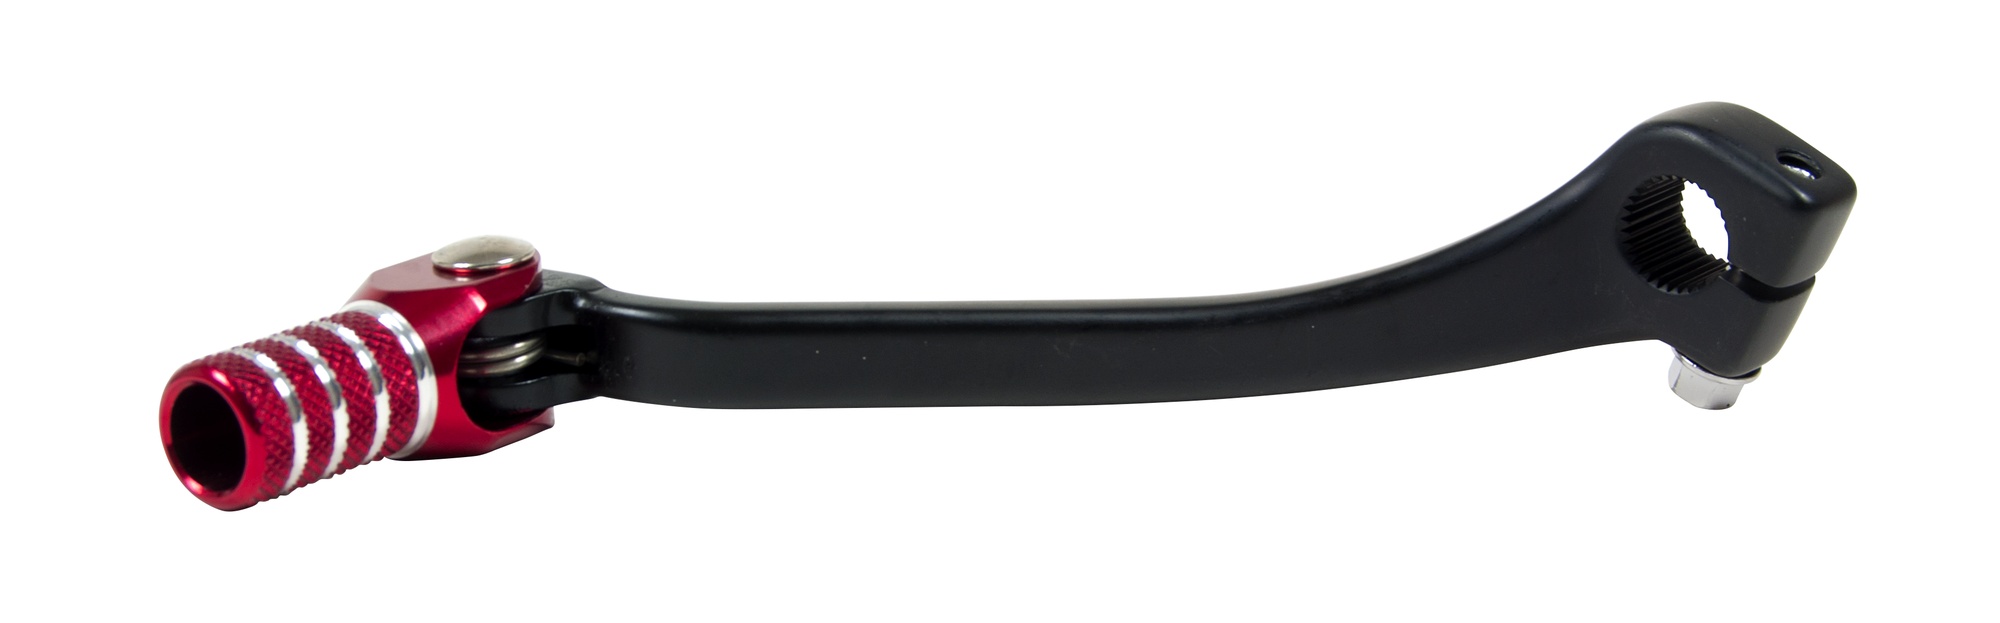 Obrázek produktu řadící páka hliníková Honda, RTECH (černo-červená)